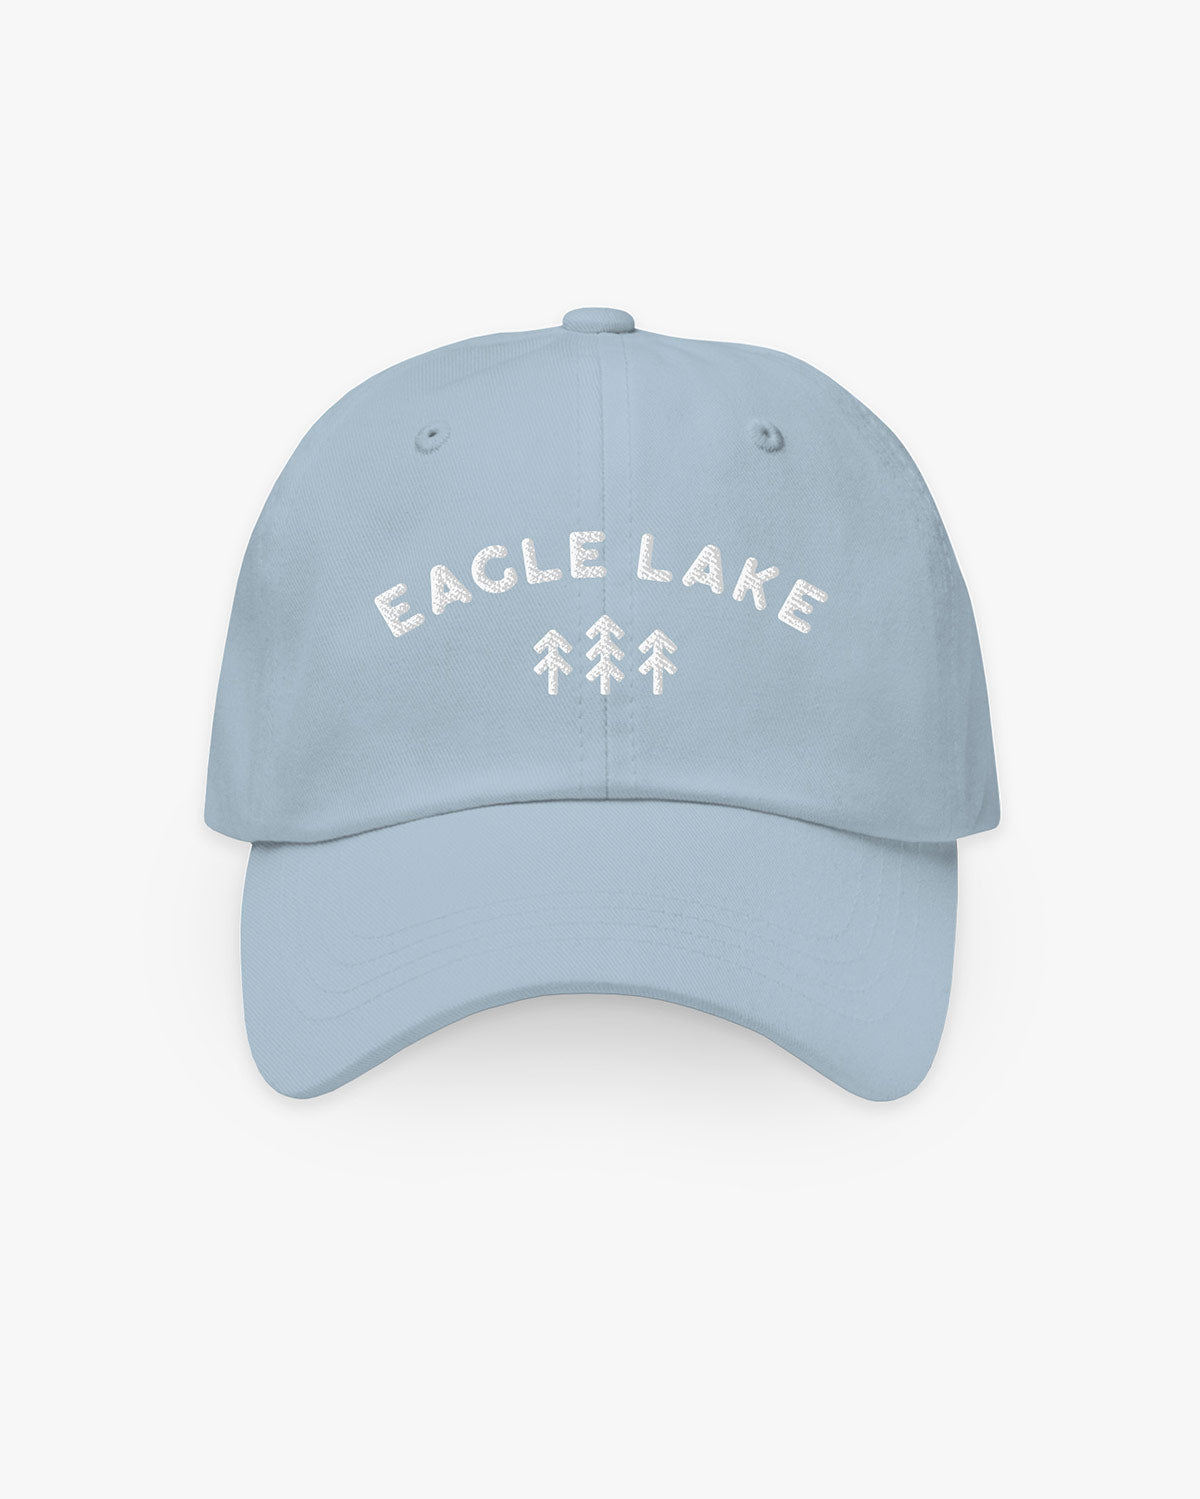 Trees - Eagle Lake - Hat